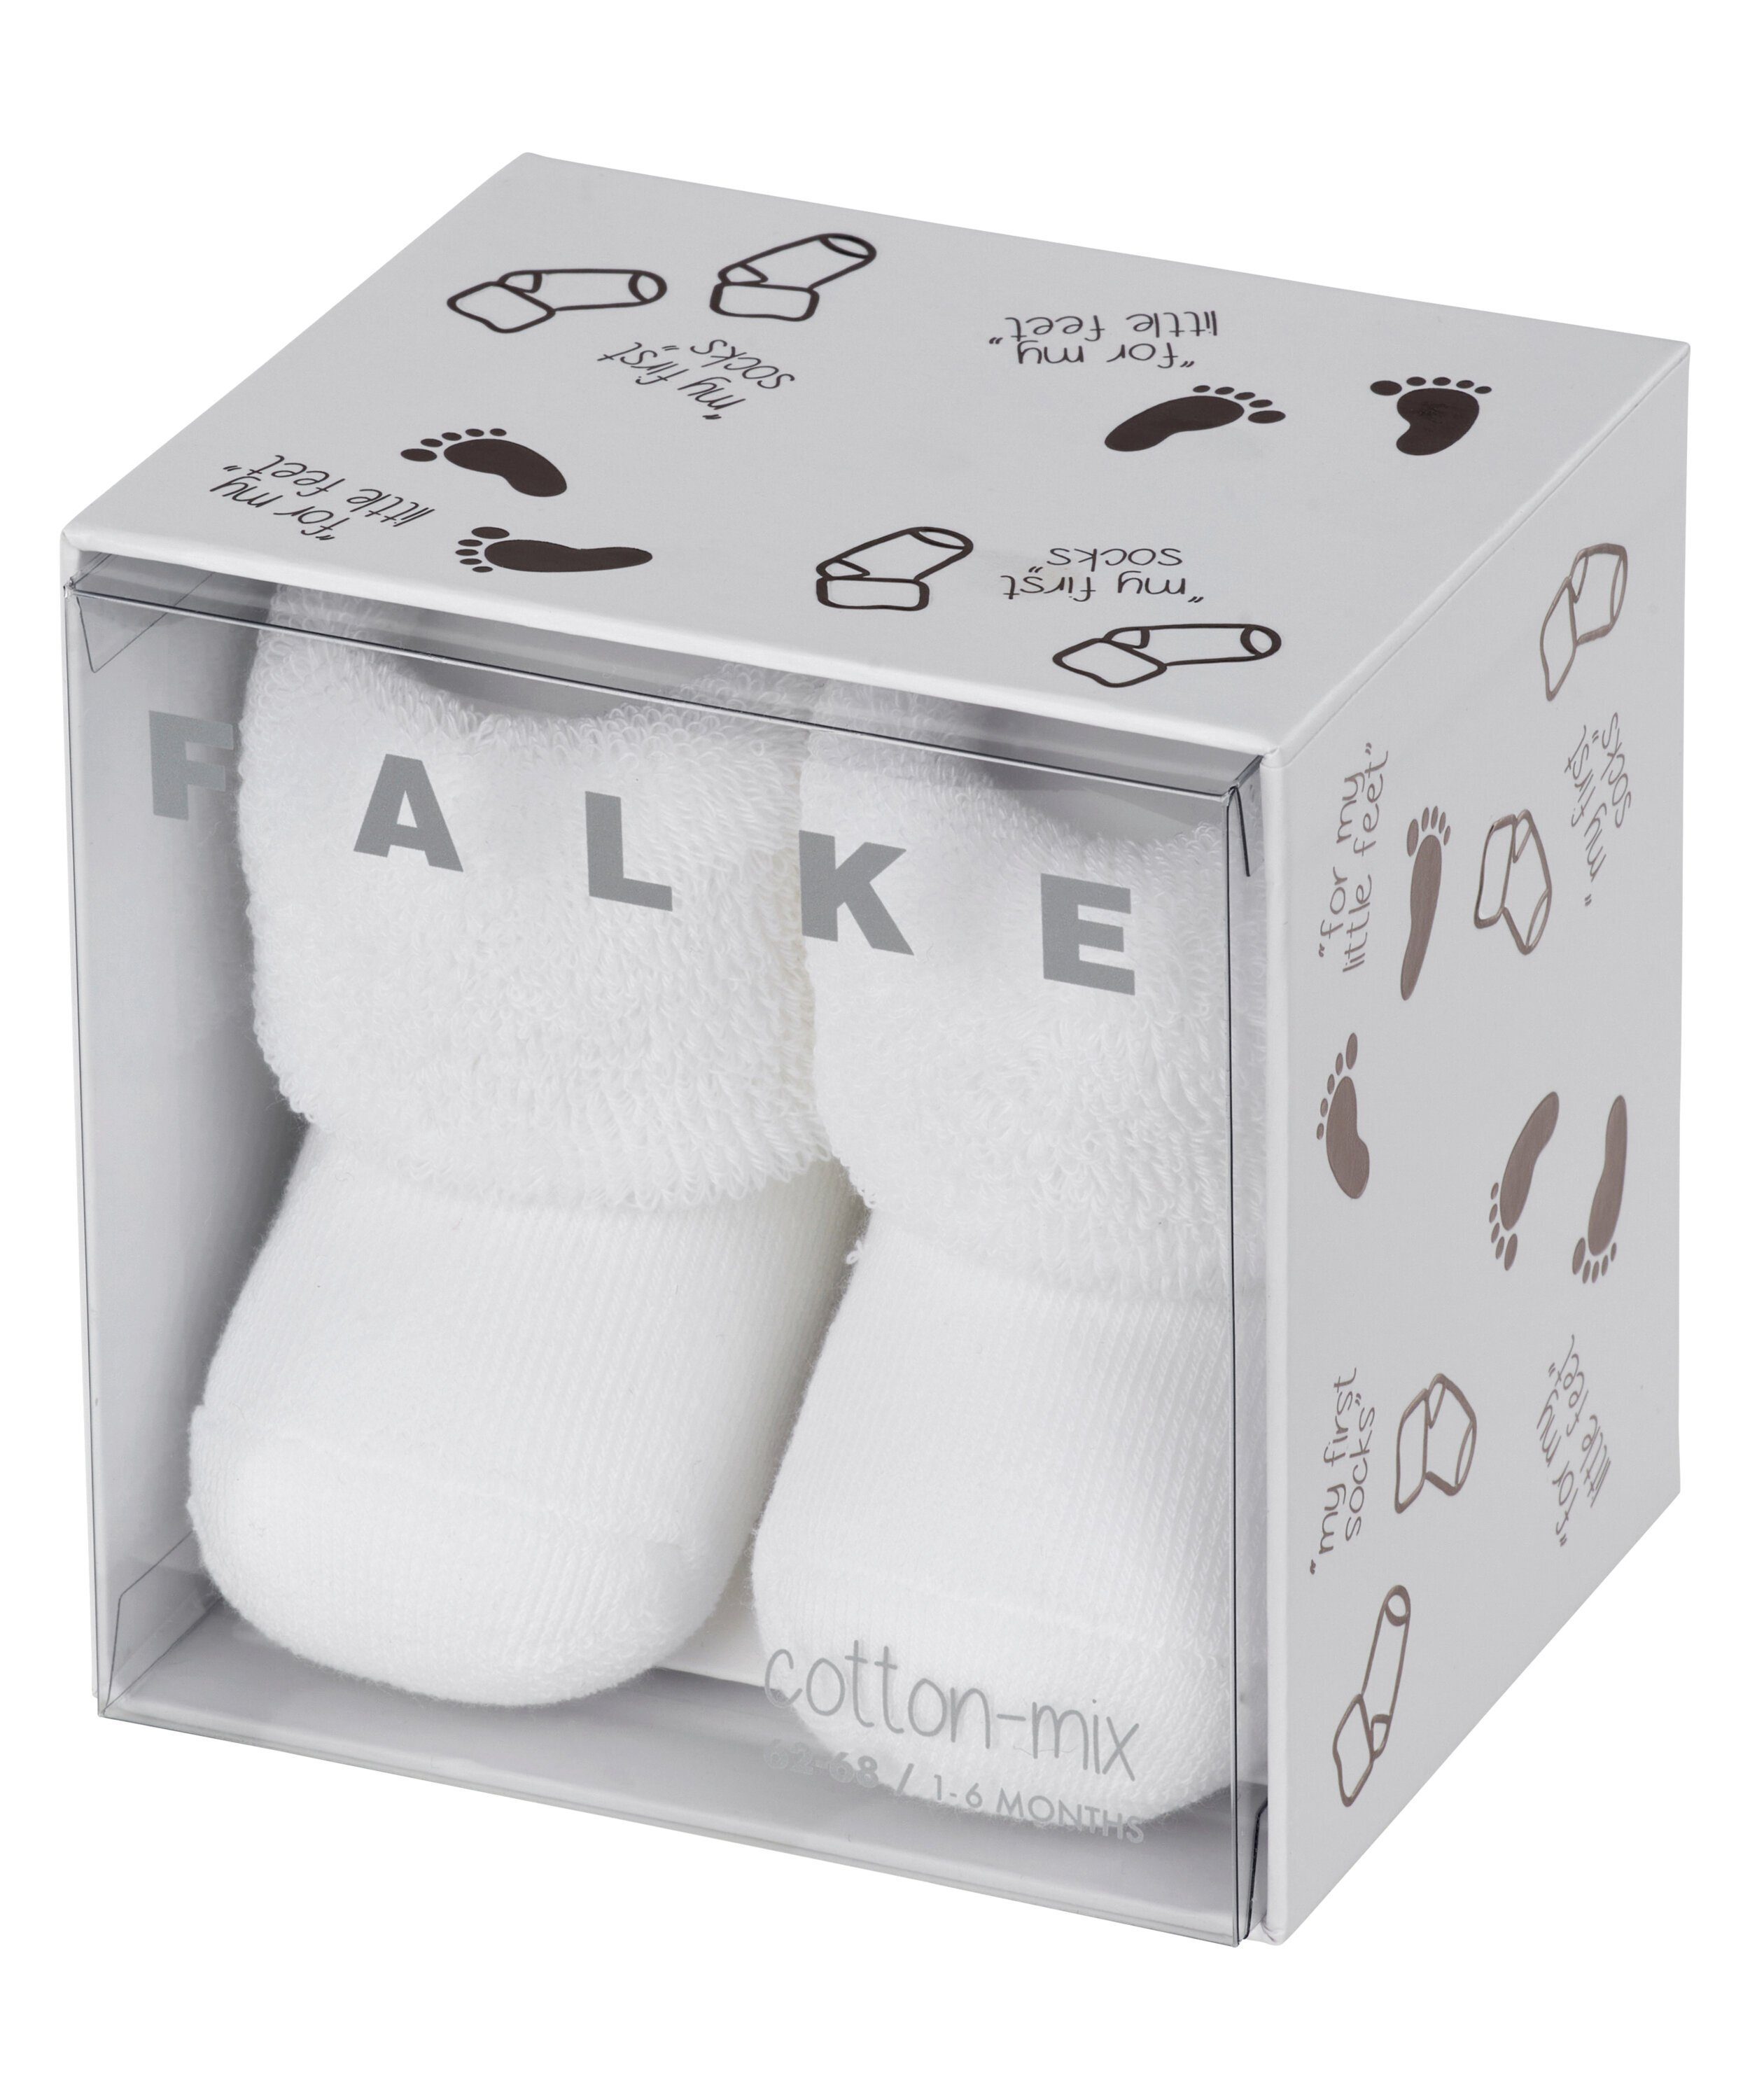 FALKE Socken Erstling (1-Paar) white (2000)